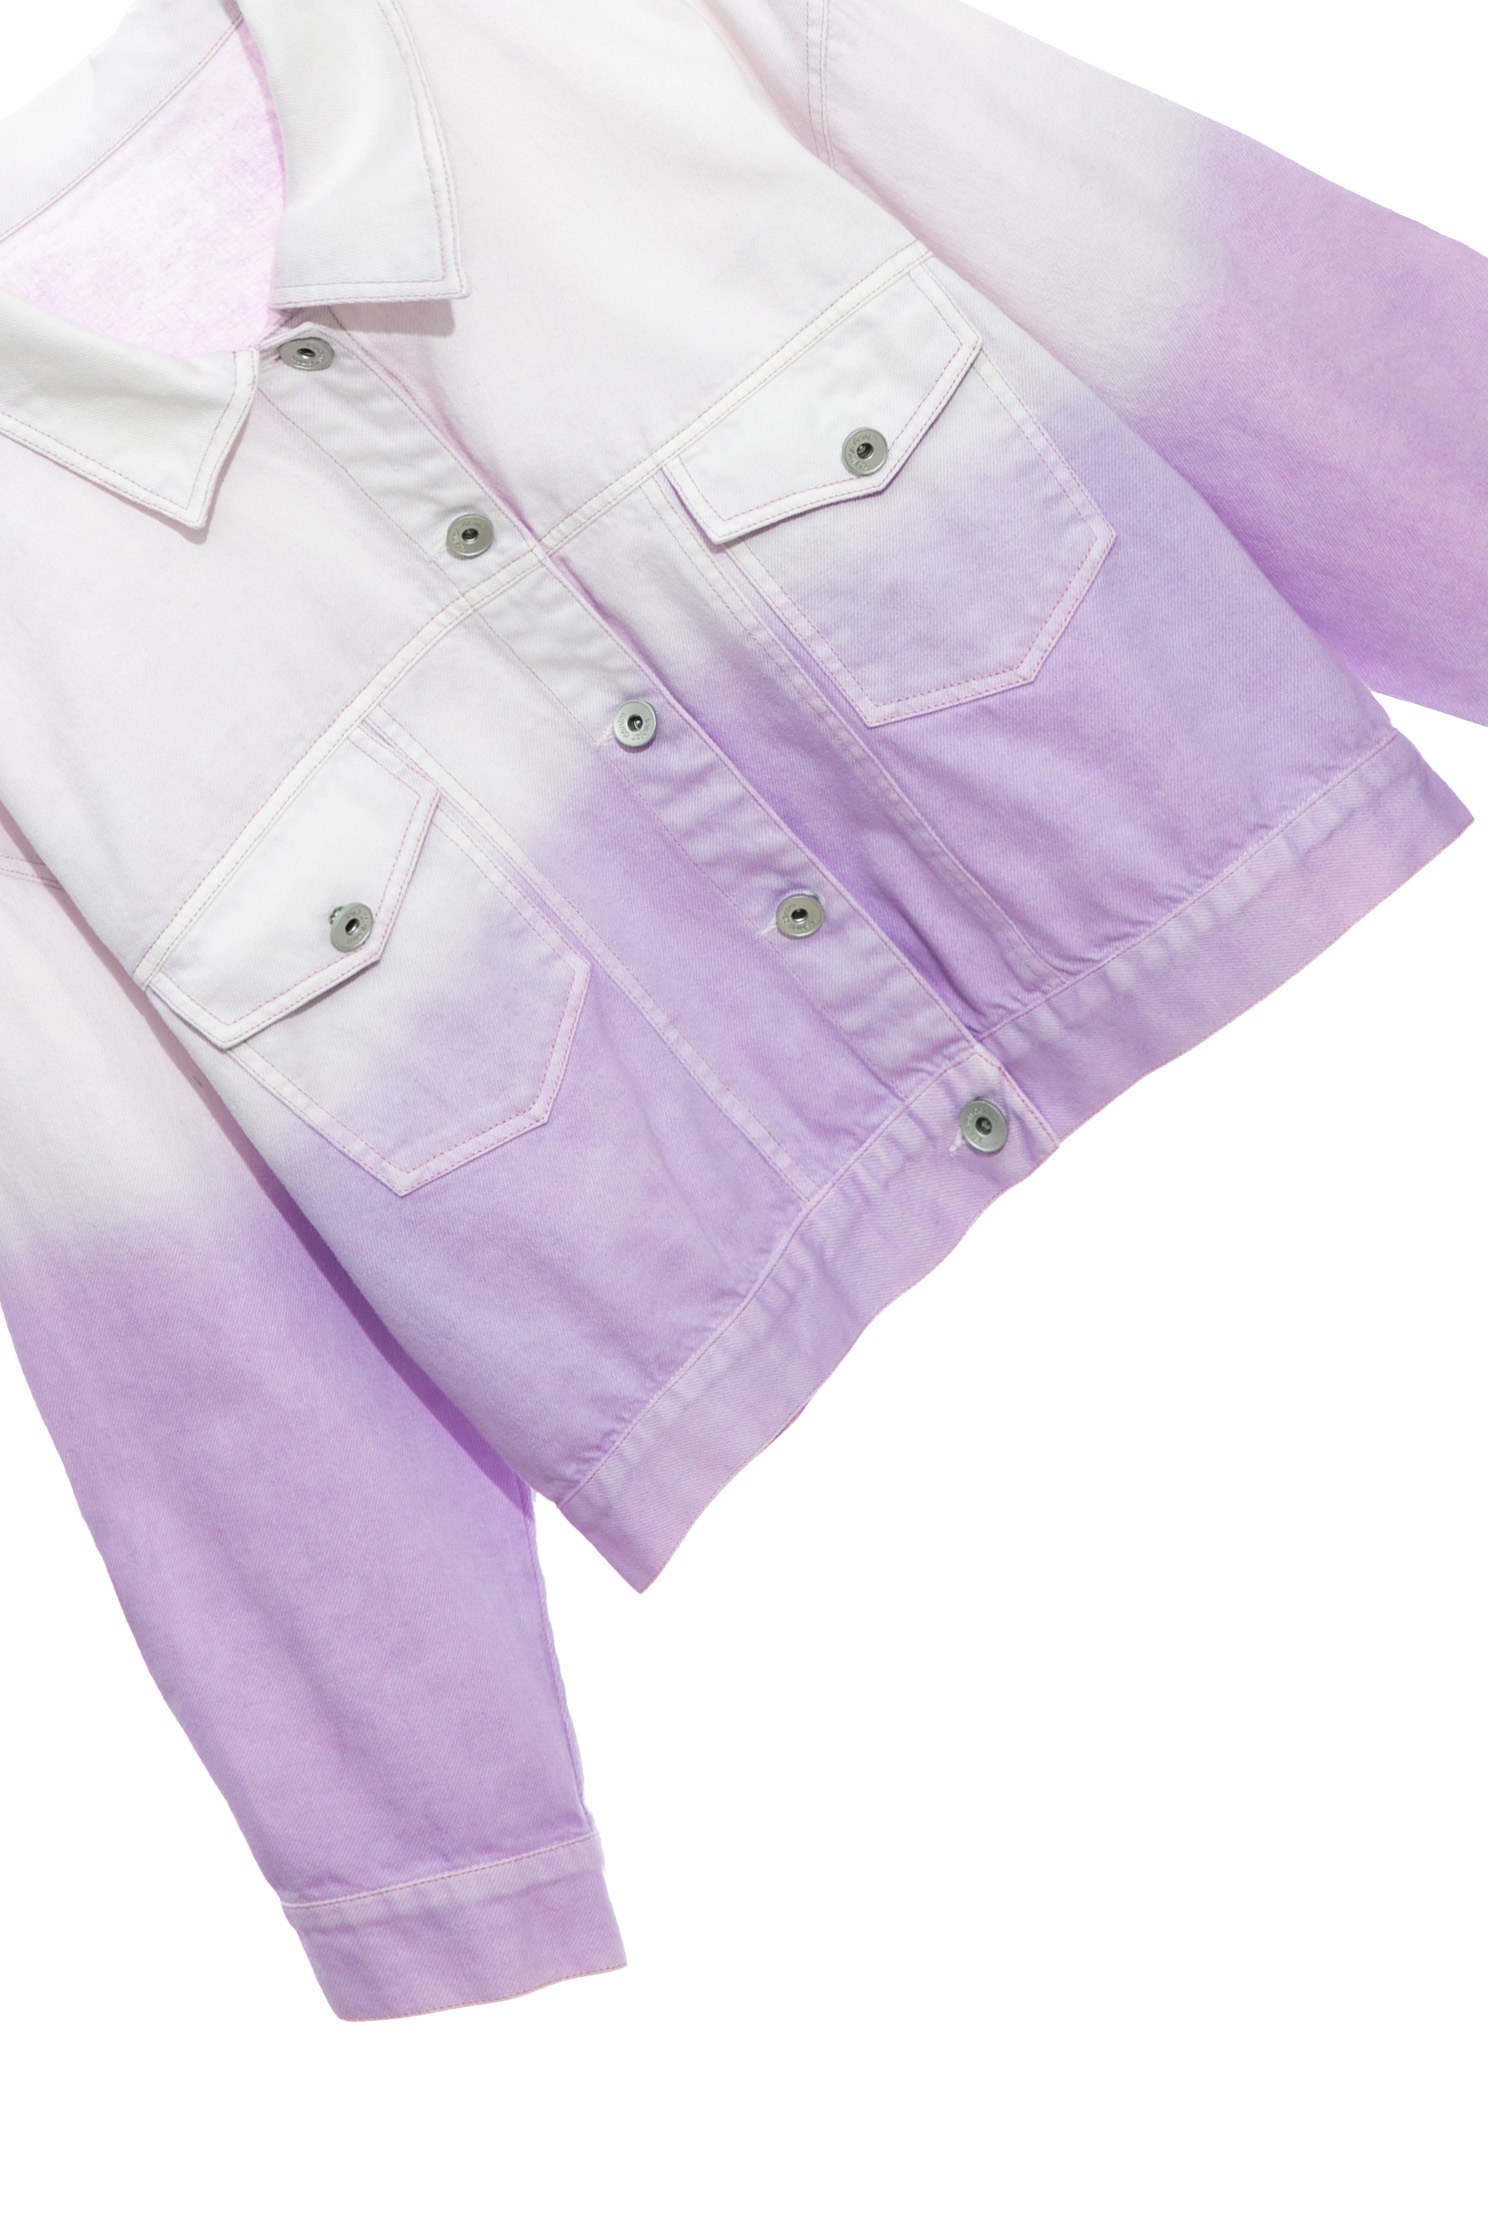 漸層粉紫牛仔外套漸層粉紫牛仔外套,保暖特輯,外套,春夏穿搭,牛仔,牛仔外套,簡約穿搭,純棉,輕奢度假